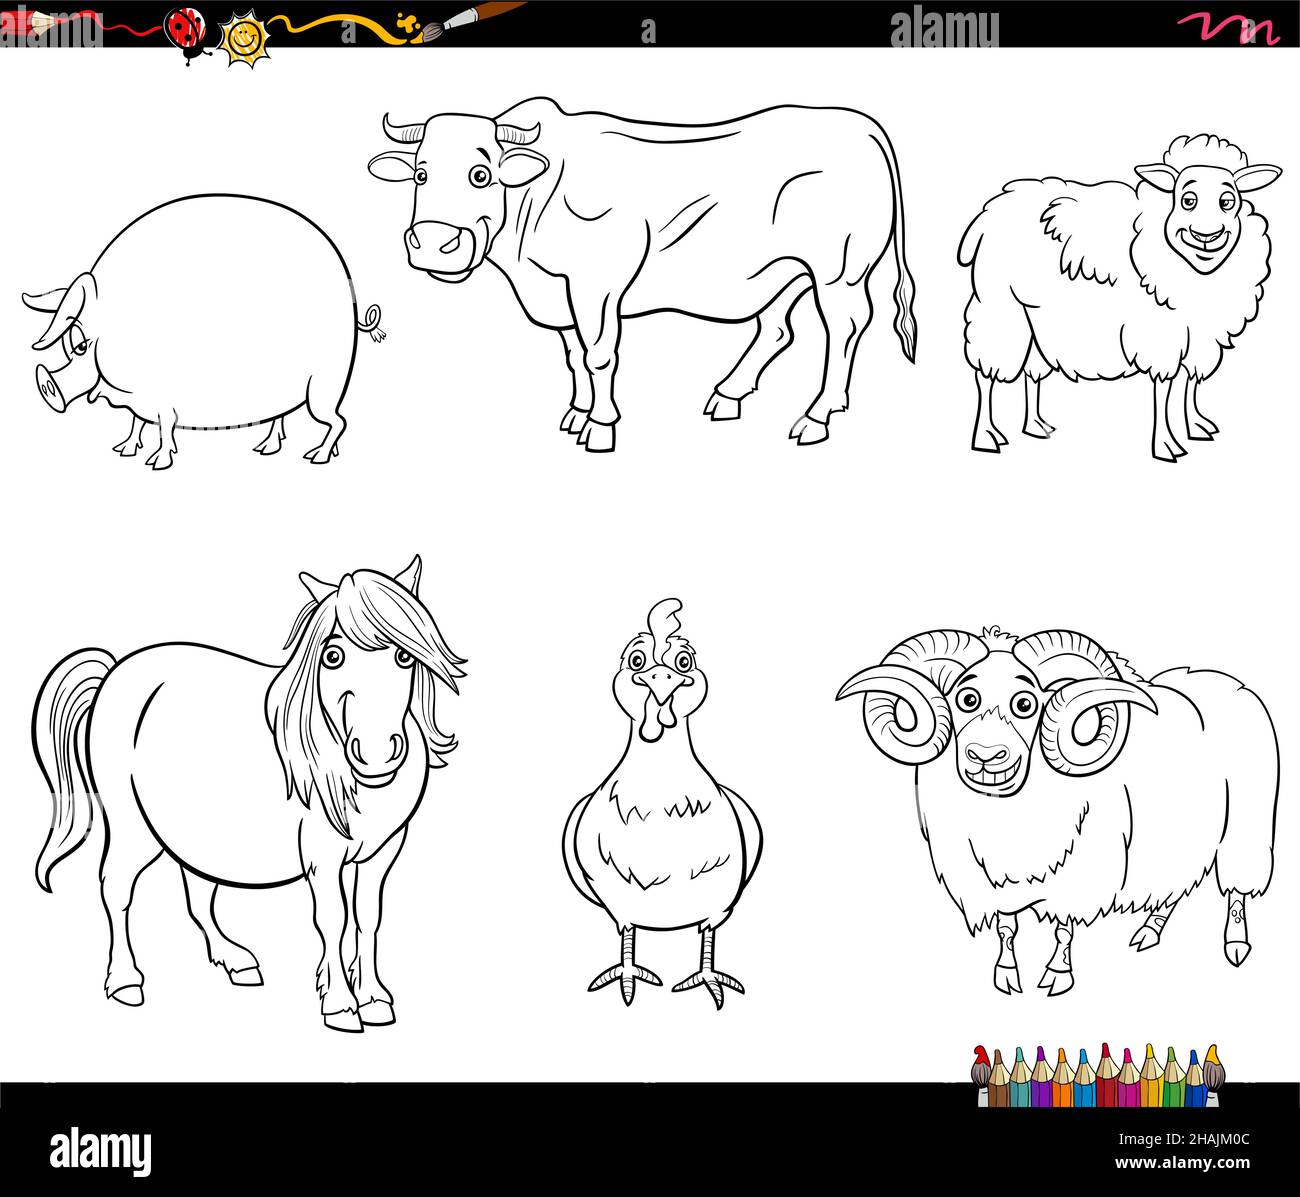 Illustrazione di fumetti in bianco e nero dei caratteri fumetti animali della fattoria Imposta la pagina del libro da colorare Illustrazione Vettoriale